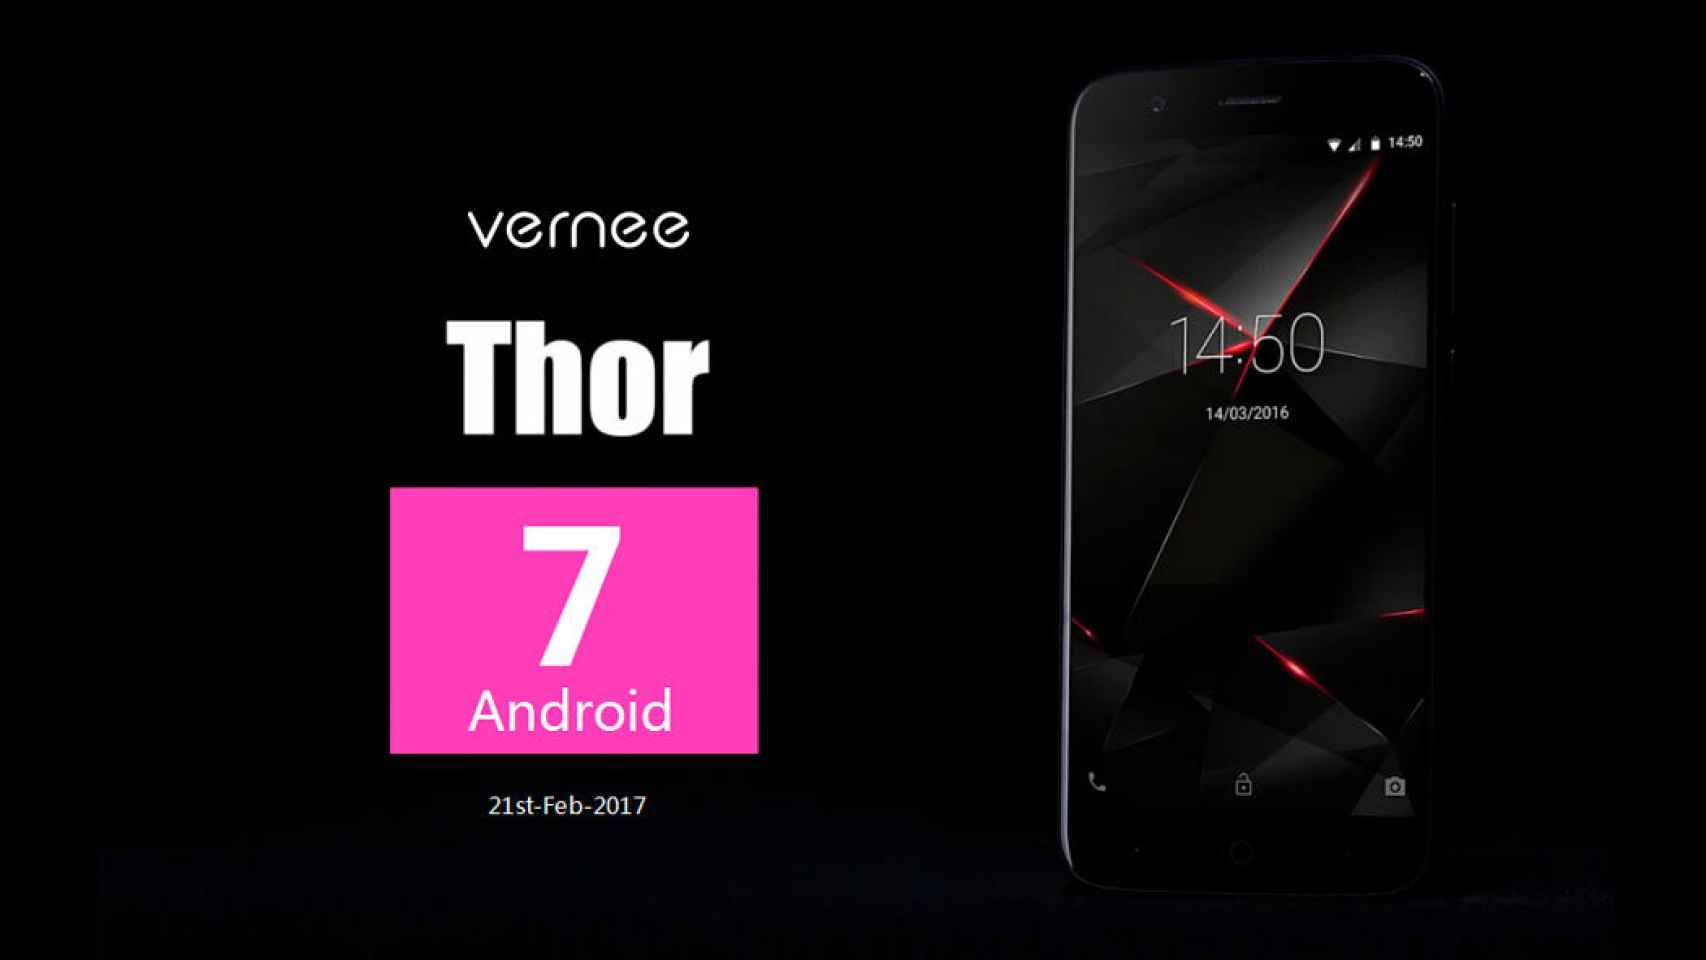 Móviles baratos que actualizan a Android 7: el Vernee Thor recibe Nougat